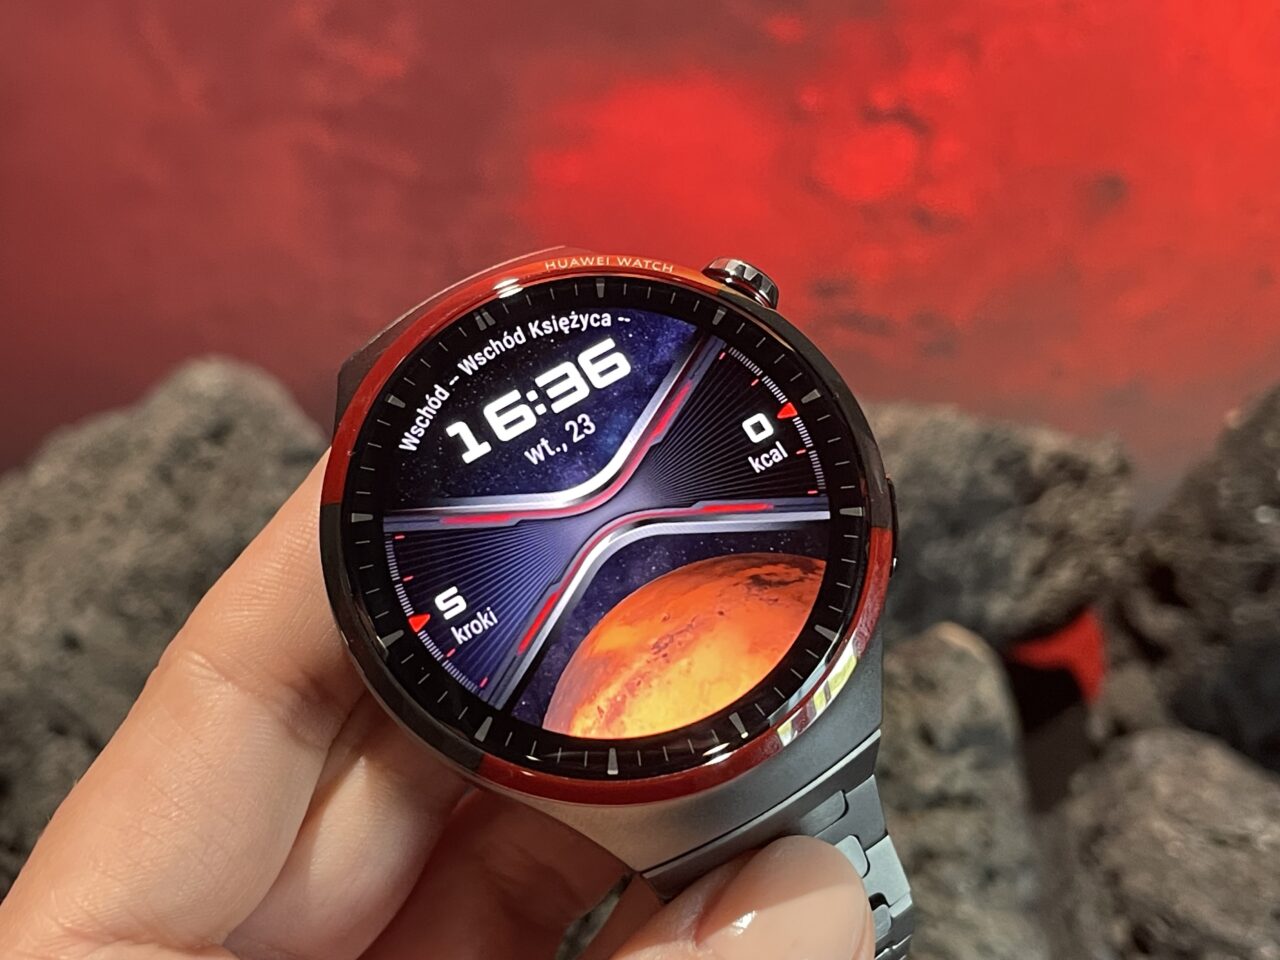 Zegarek Huawei na ręce osoby, z wyświetlaczem pokazującym godzinę i grafikę kosmiczną, w tle czerwone tło przypominające kosmos.